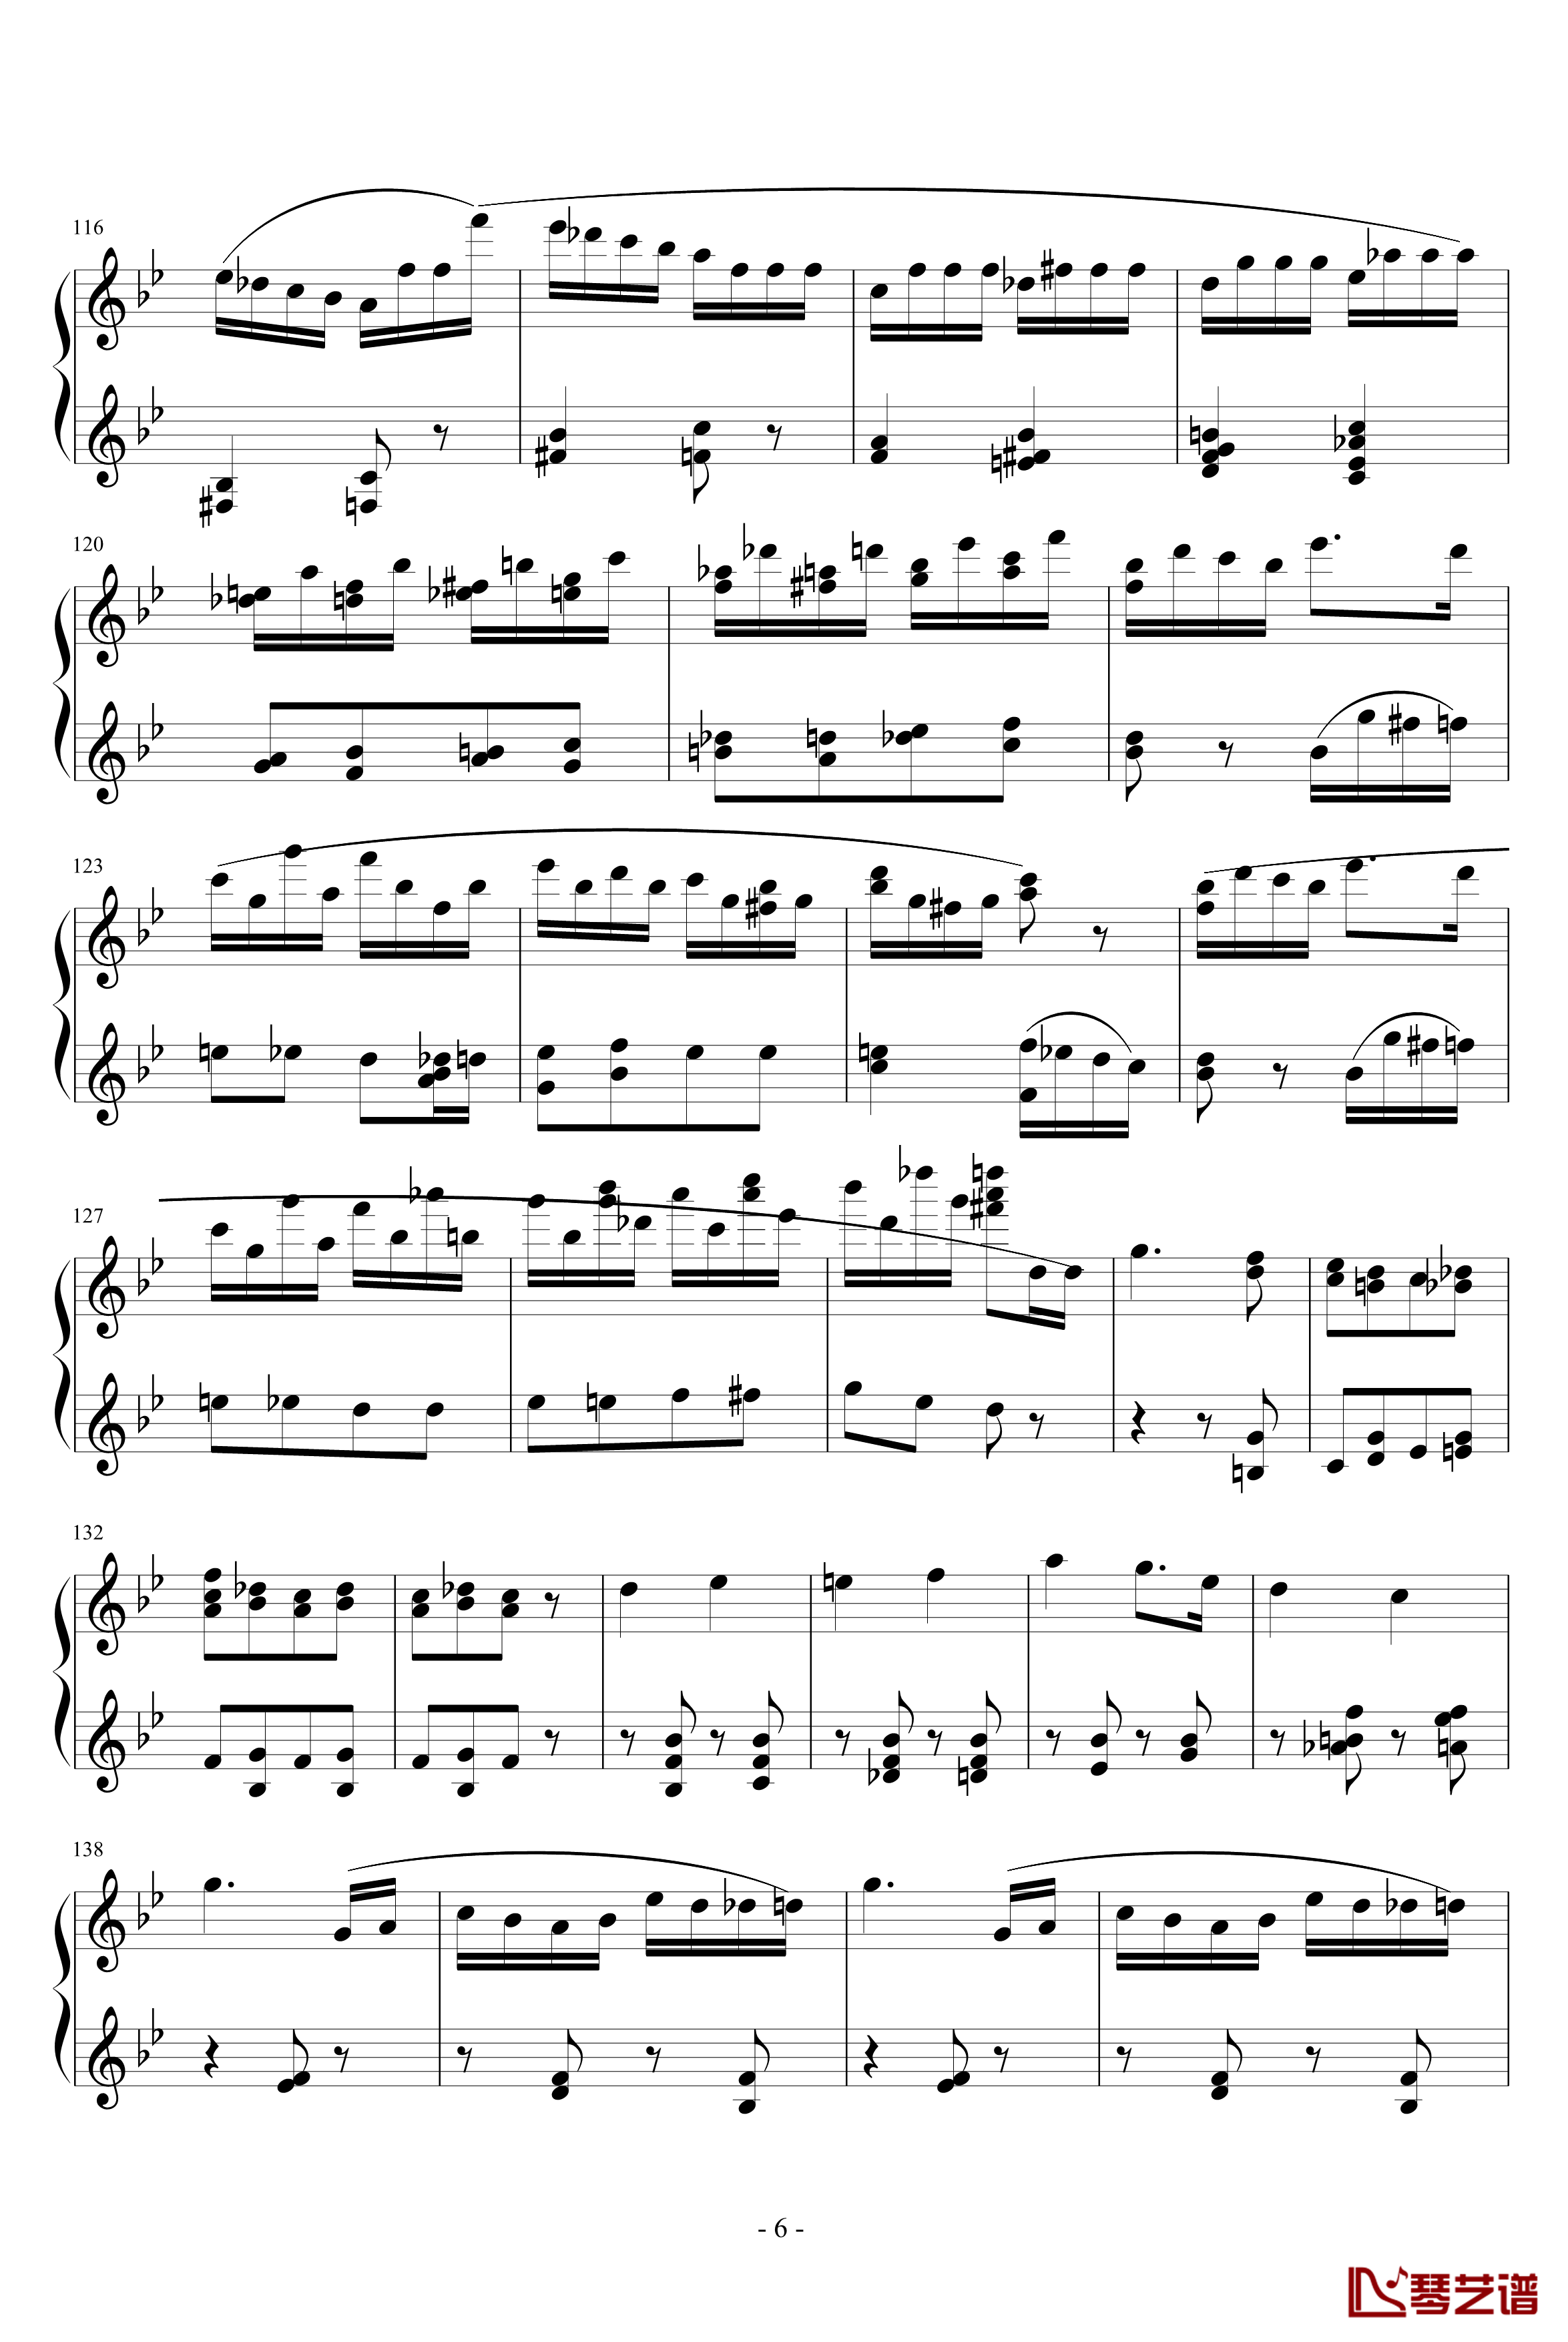 胡桃夹子序曲钢琴谱-柴科夫斯基-Peter Ilyich Tchaikovsky6